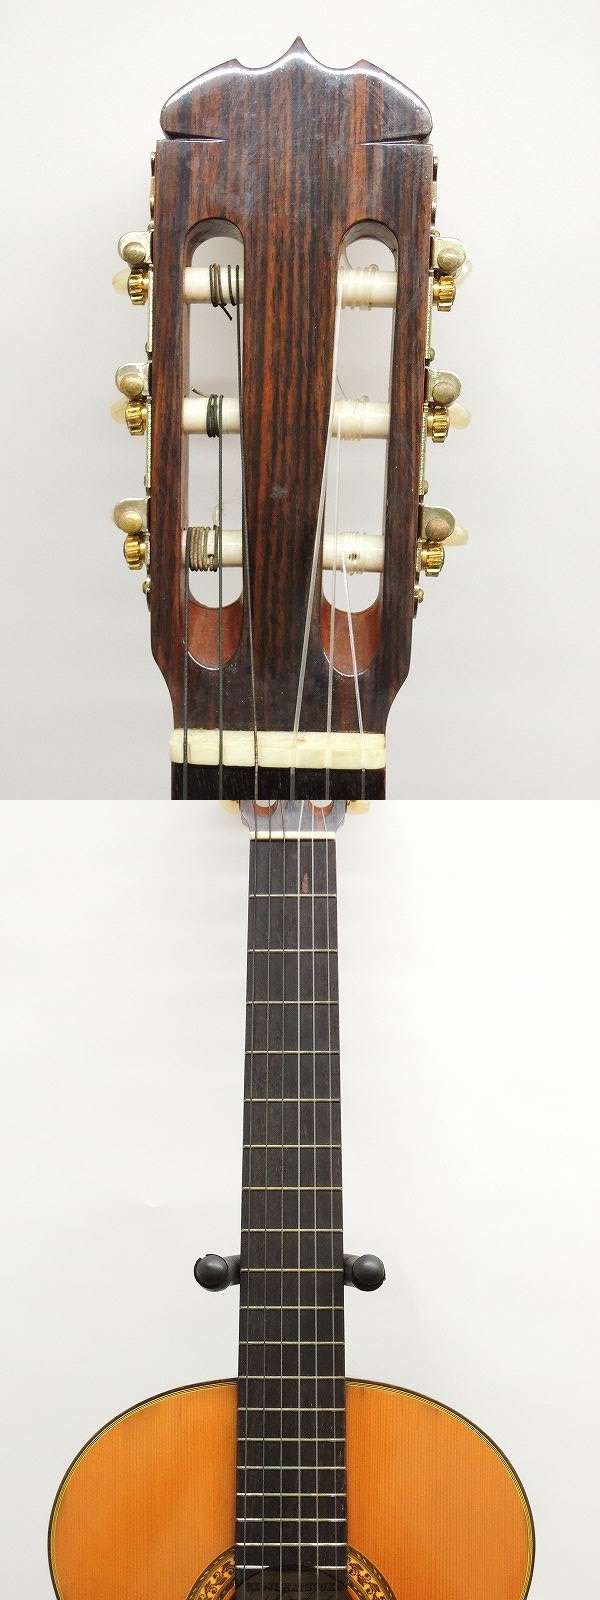 ピカピカ 松岡良治の隠れた傑作 高級総単板クラシックギター